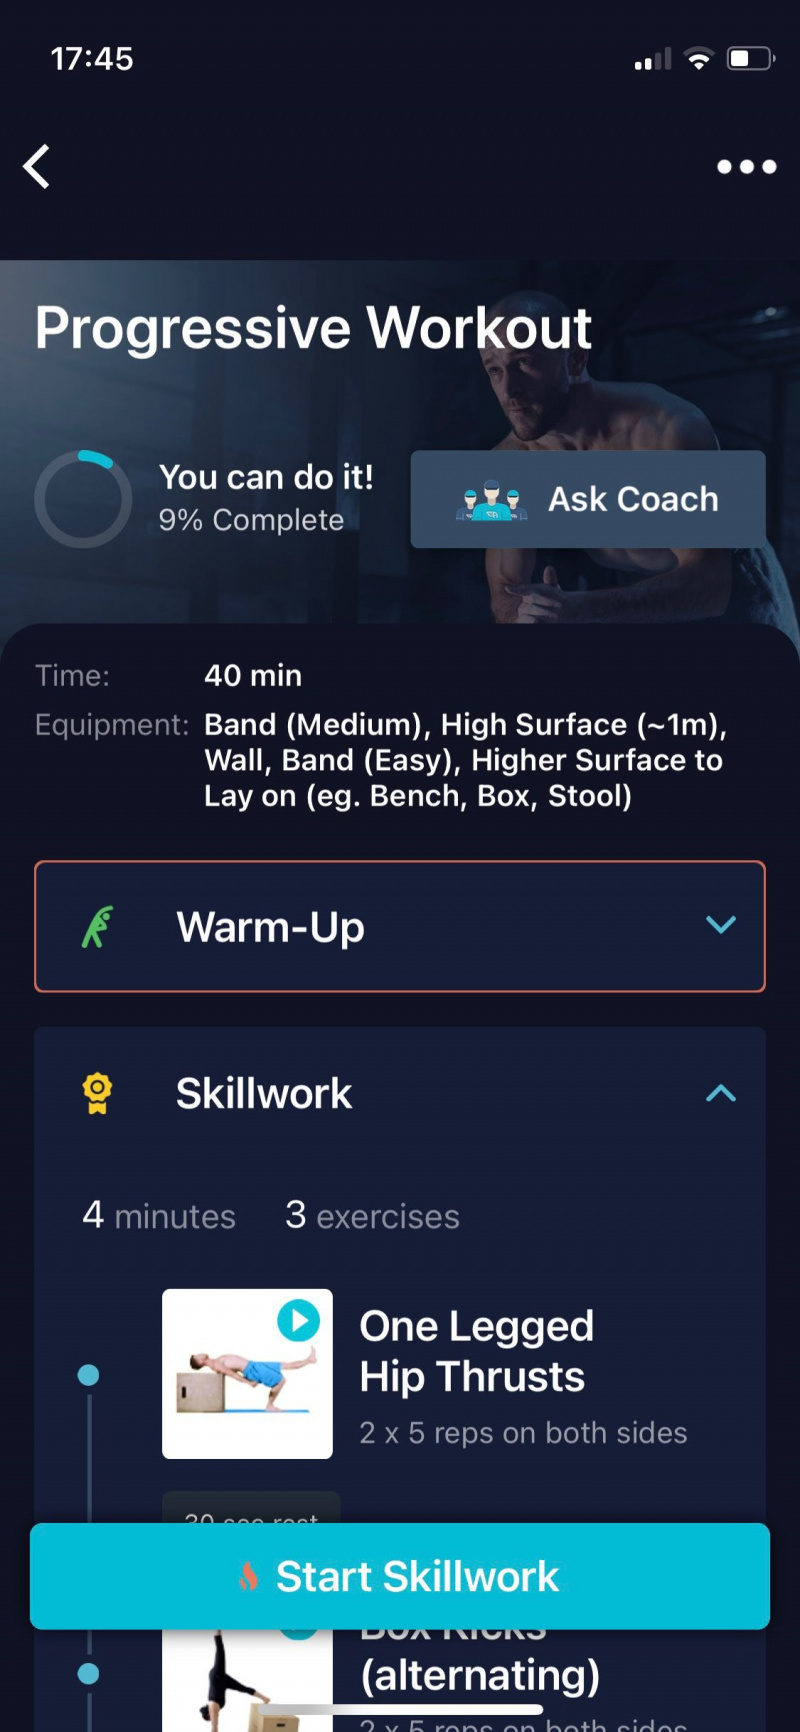   Captura de tela do Movement Athlete mostrando o programa de treino progressivo